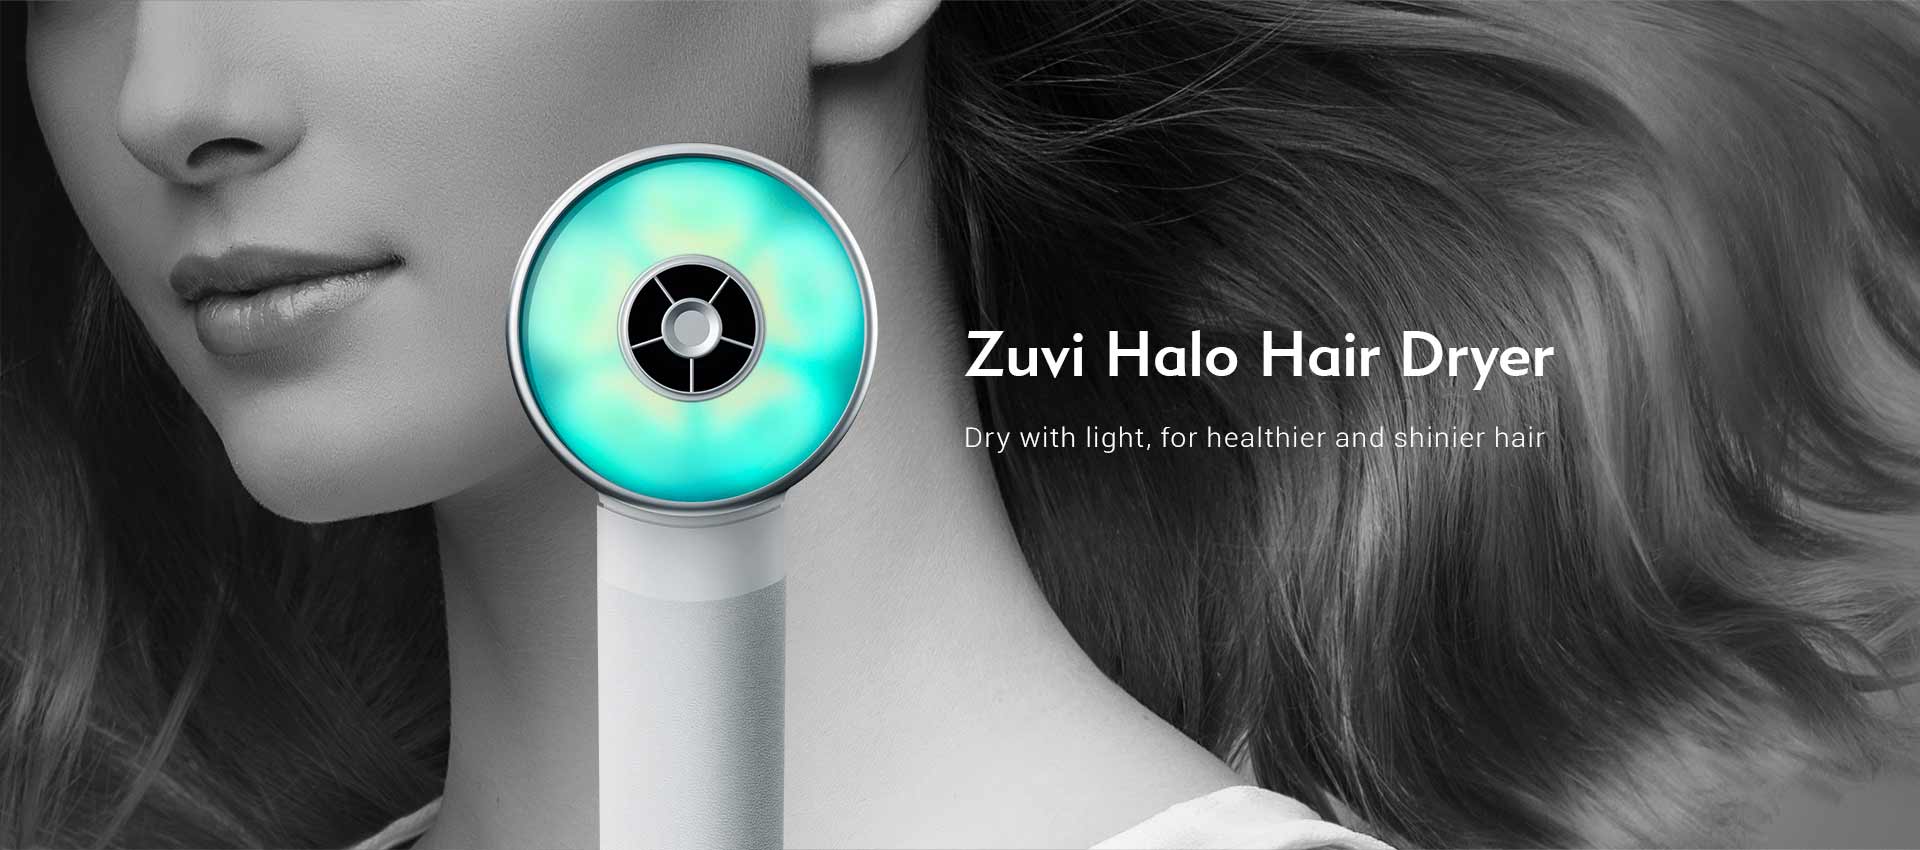 Zuvi Halo Hair Dryer 1.jpg